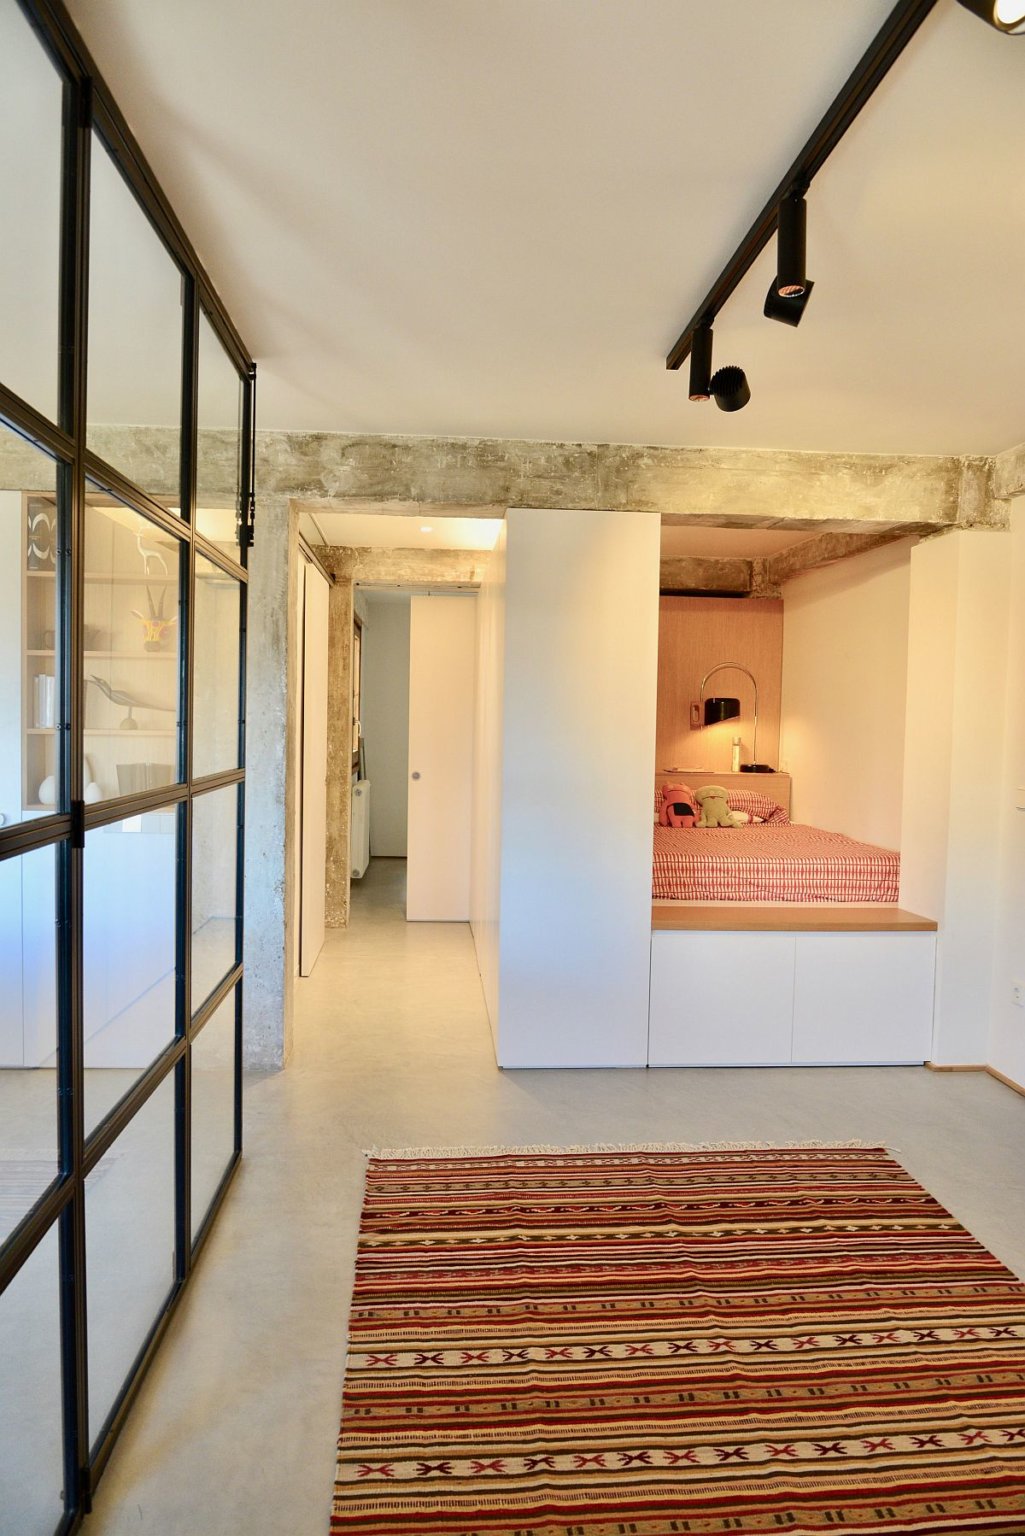 hình ảnh phòng ngủ nhỏ ấm cúng trong hốc tường với ga gối, chăn màu cam đất